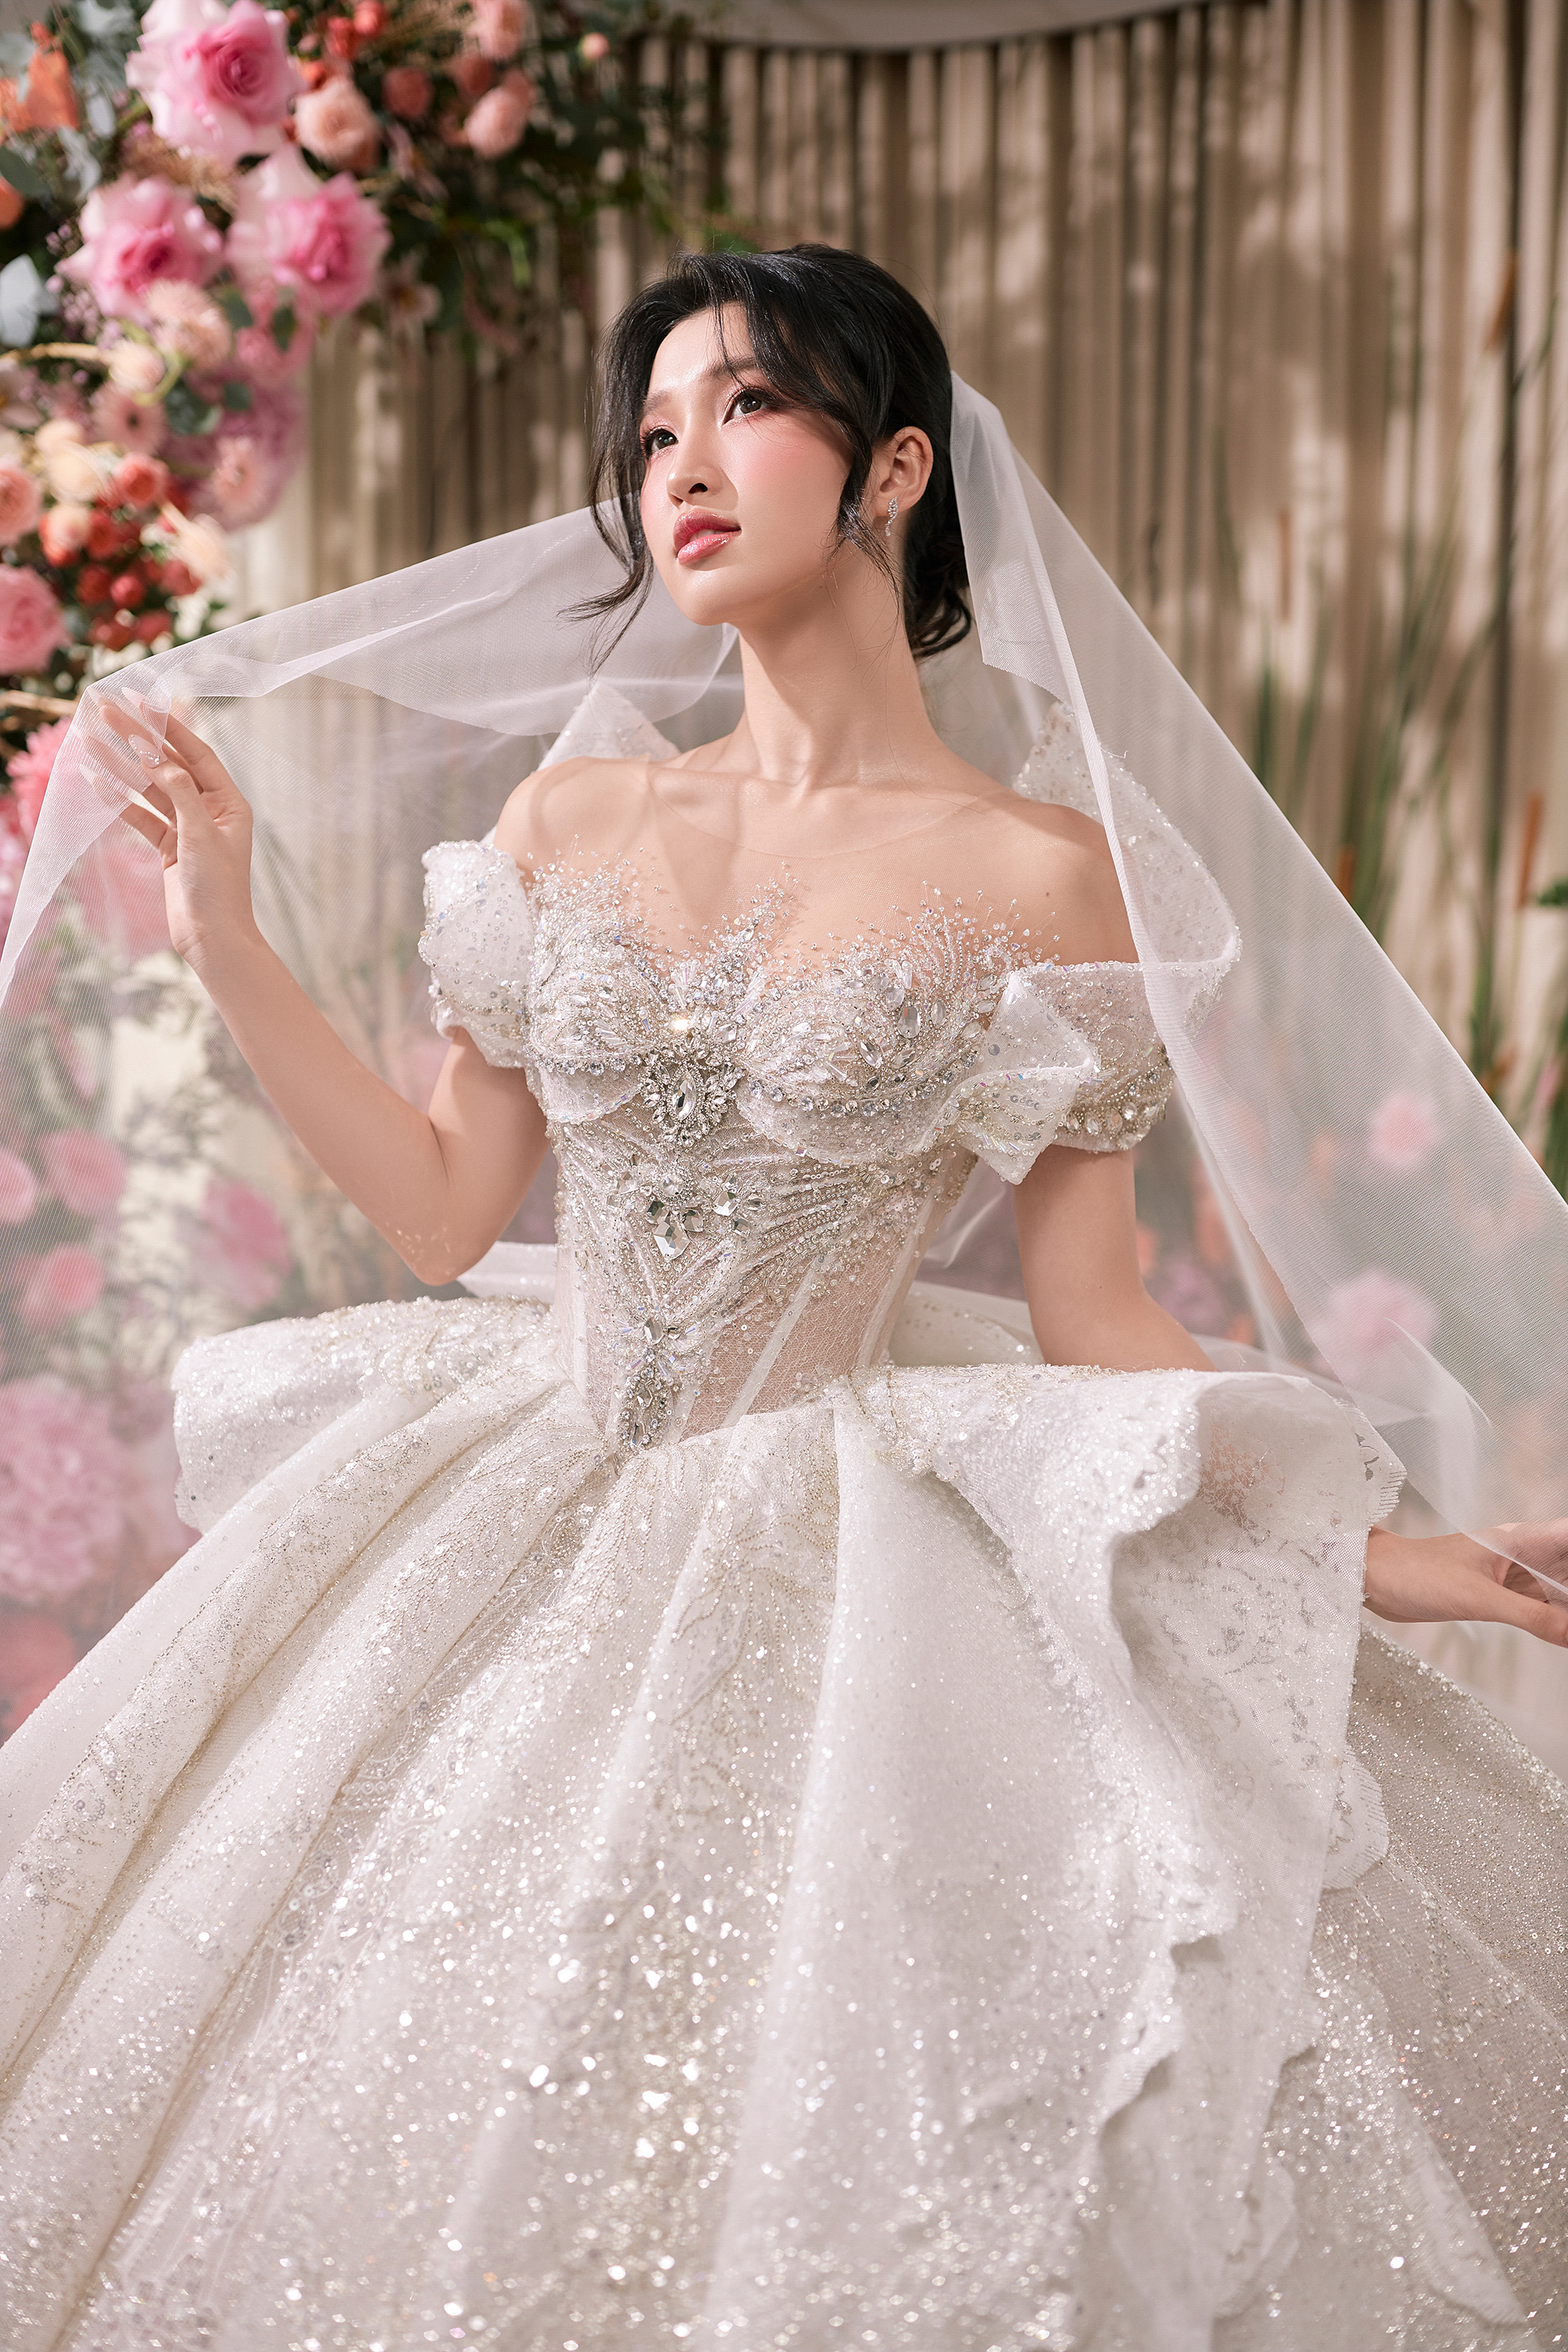 Á hậu Phương Nhi gợi cảm khi diện váy cưới  - Ảnh 3.